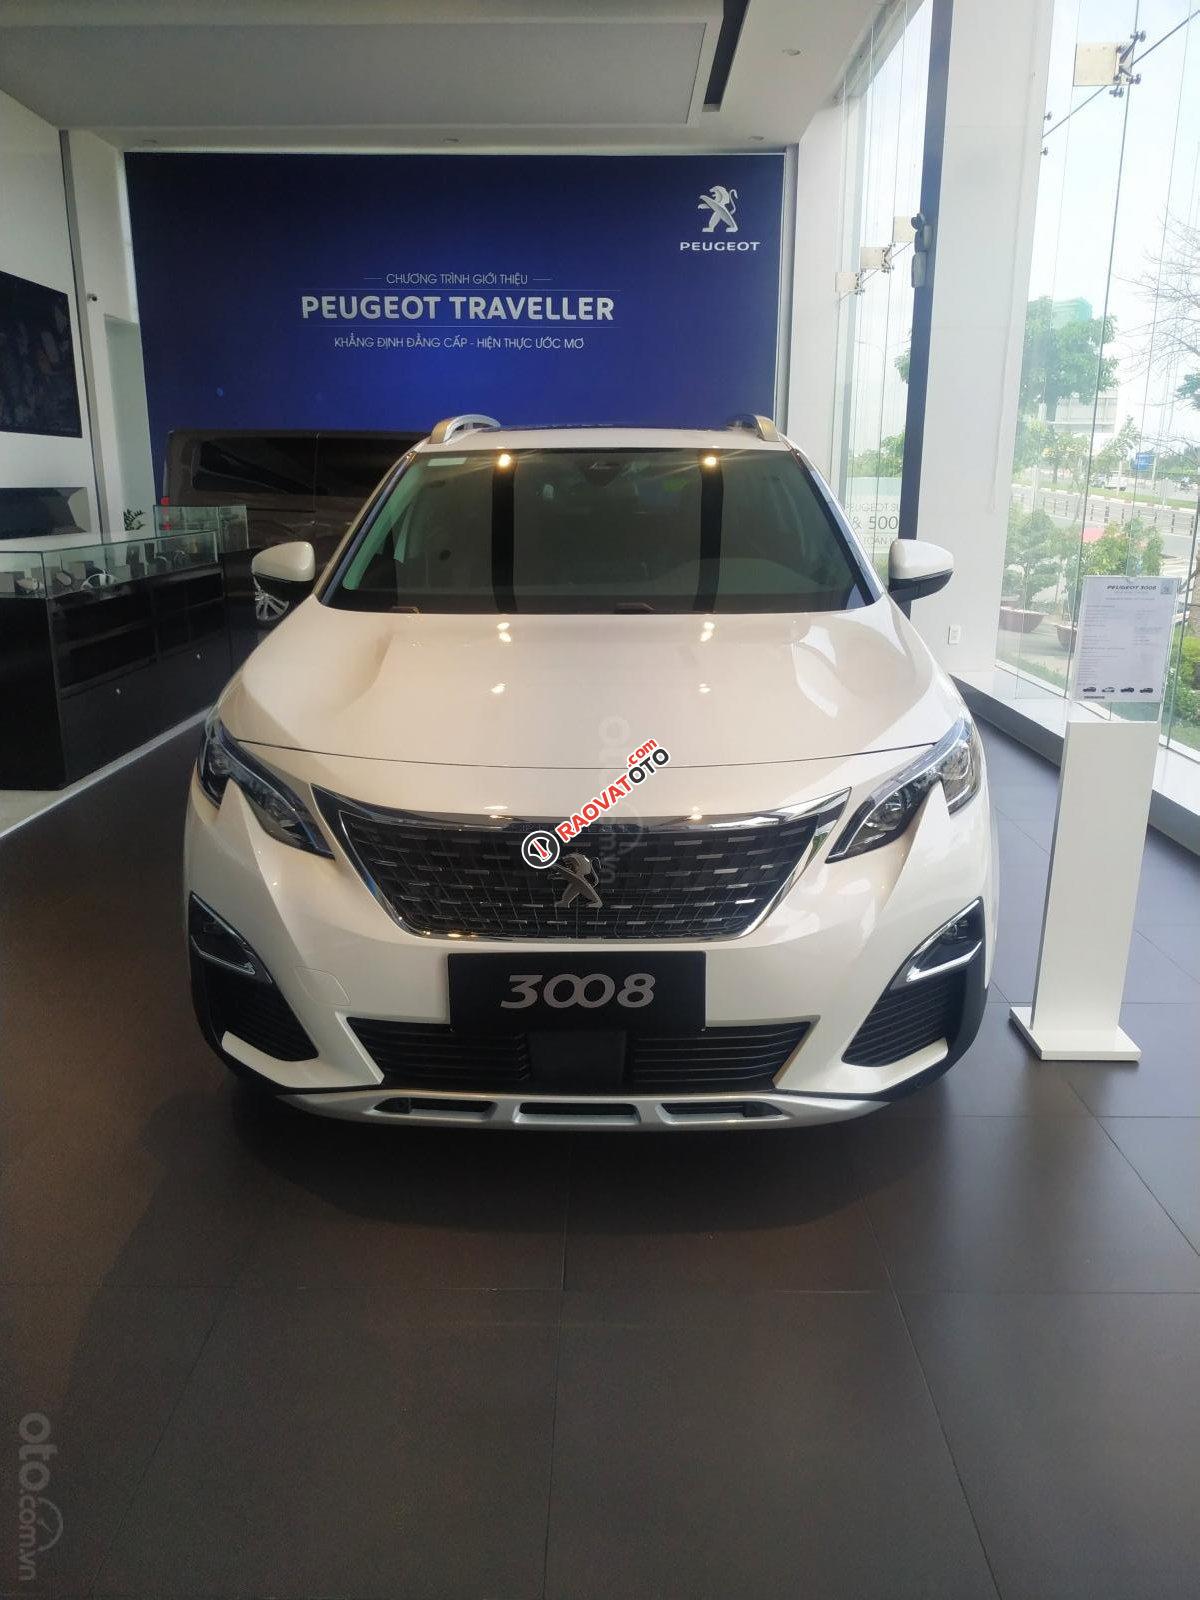 Cần bán xe Peugeot 5008 1.6AT đời 2019 new 100%, màu trắng, giá chỉ 1 tỷ 349 triệu đồng-1